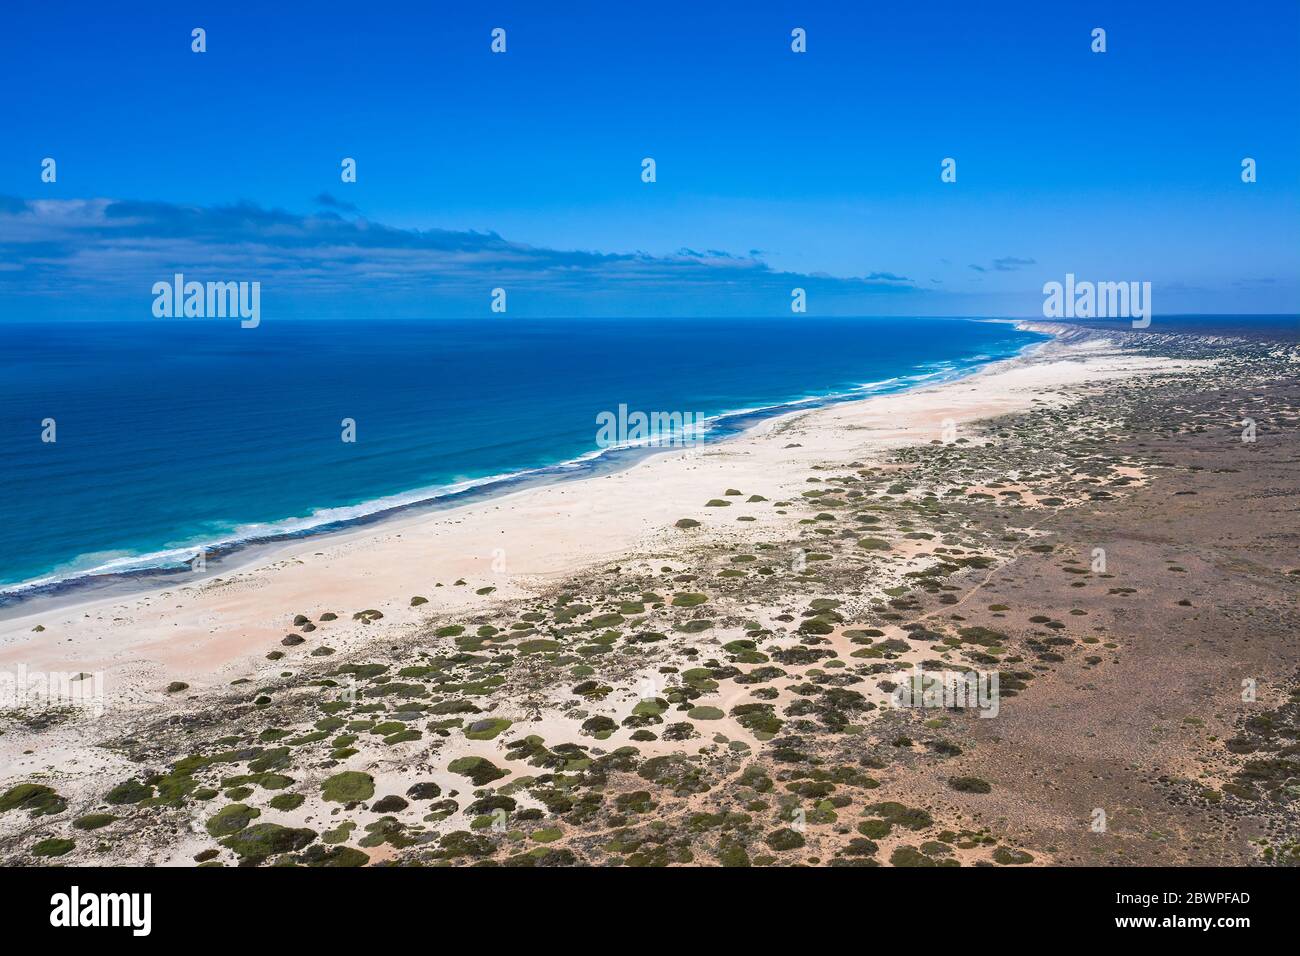 Vue aérienne de la plage et de la route au début de la Grande lumière australienne du côté ouest de l'Australie Banque D'Images